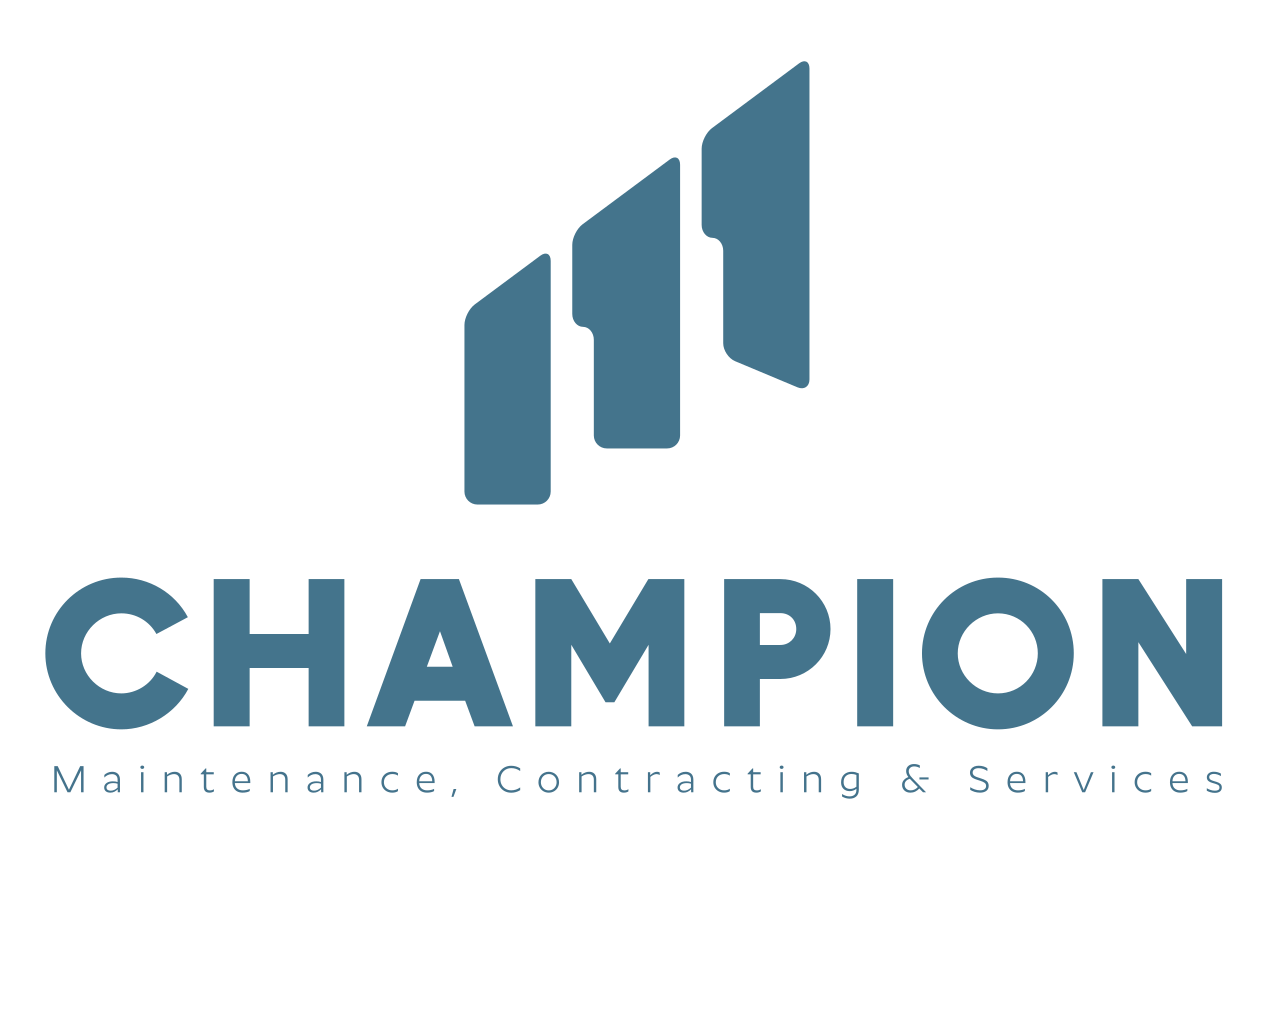 The Champions Company's logo